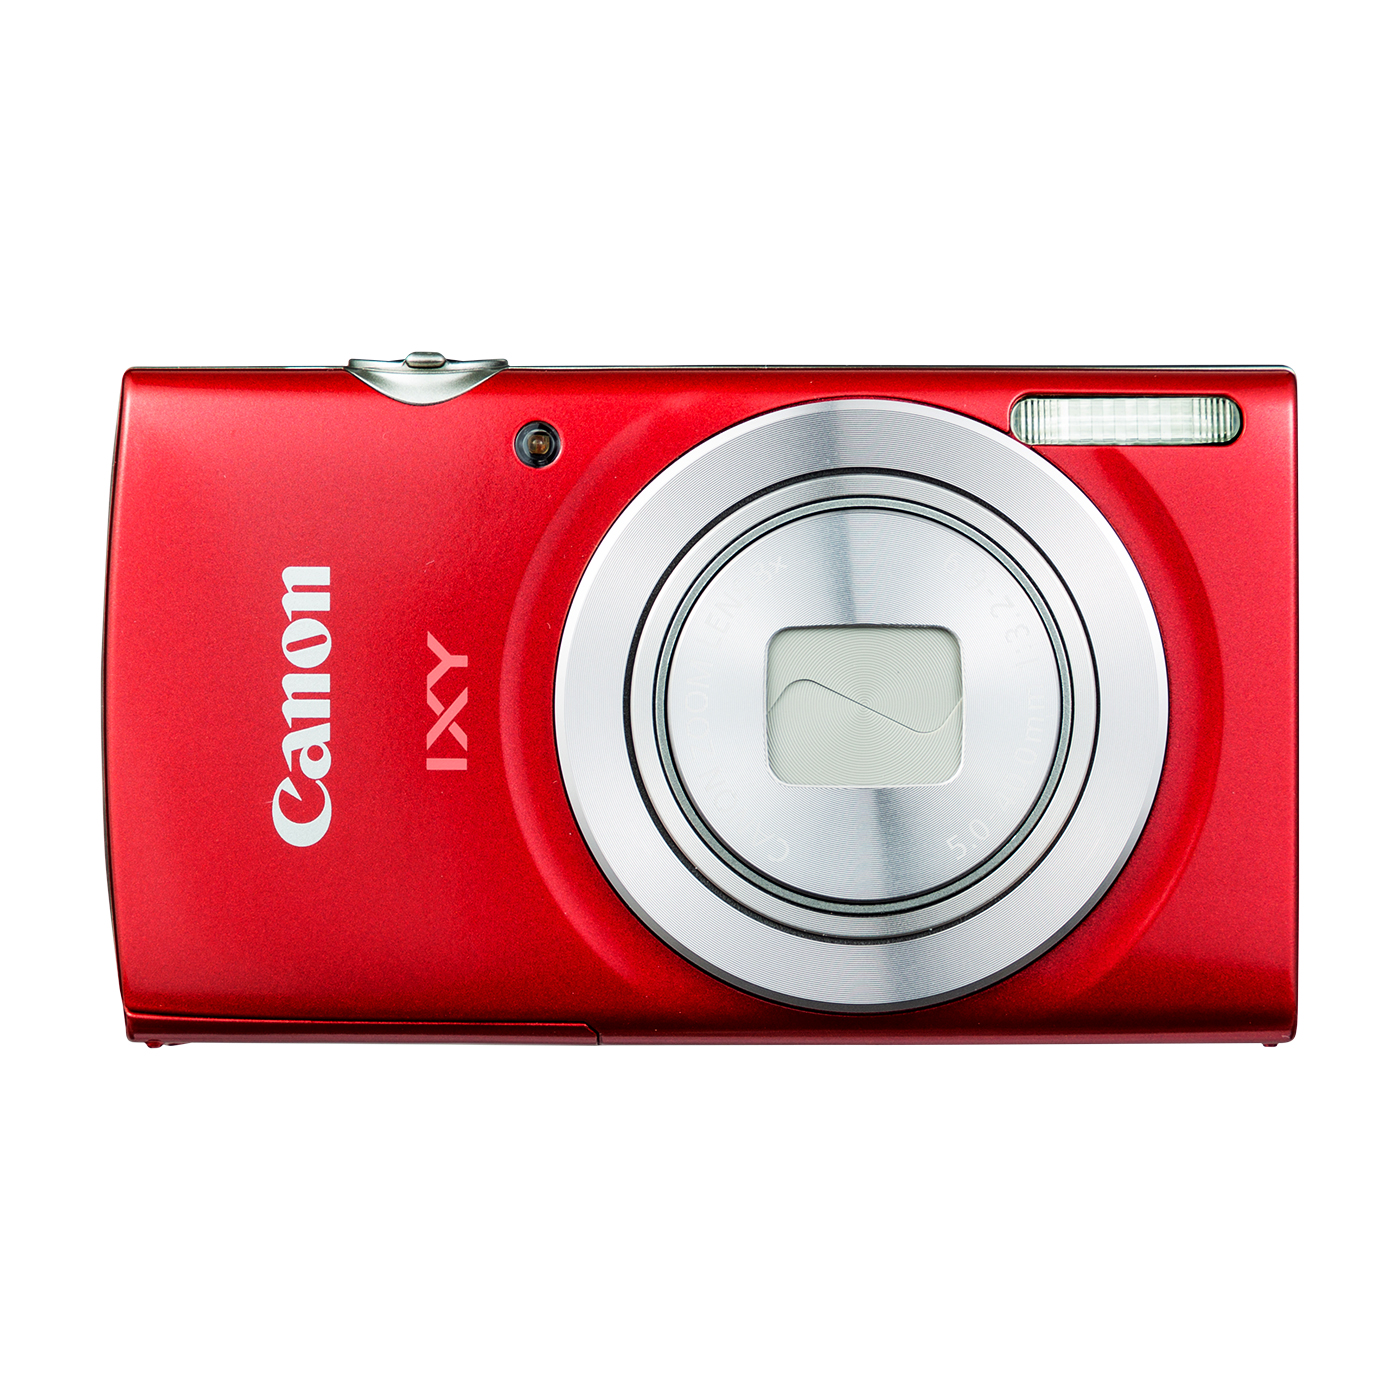 CanonキヤノンデジタルカメラIXY200